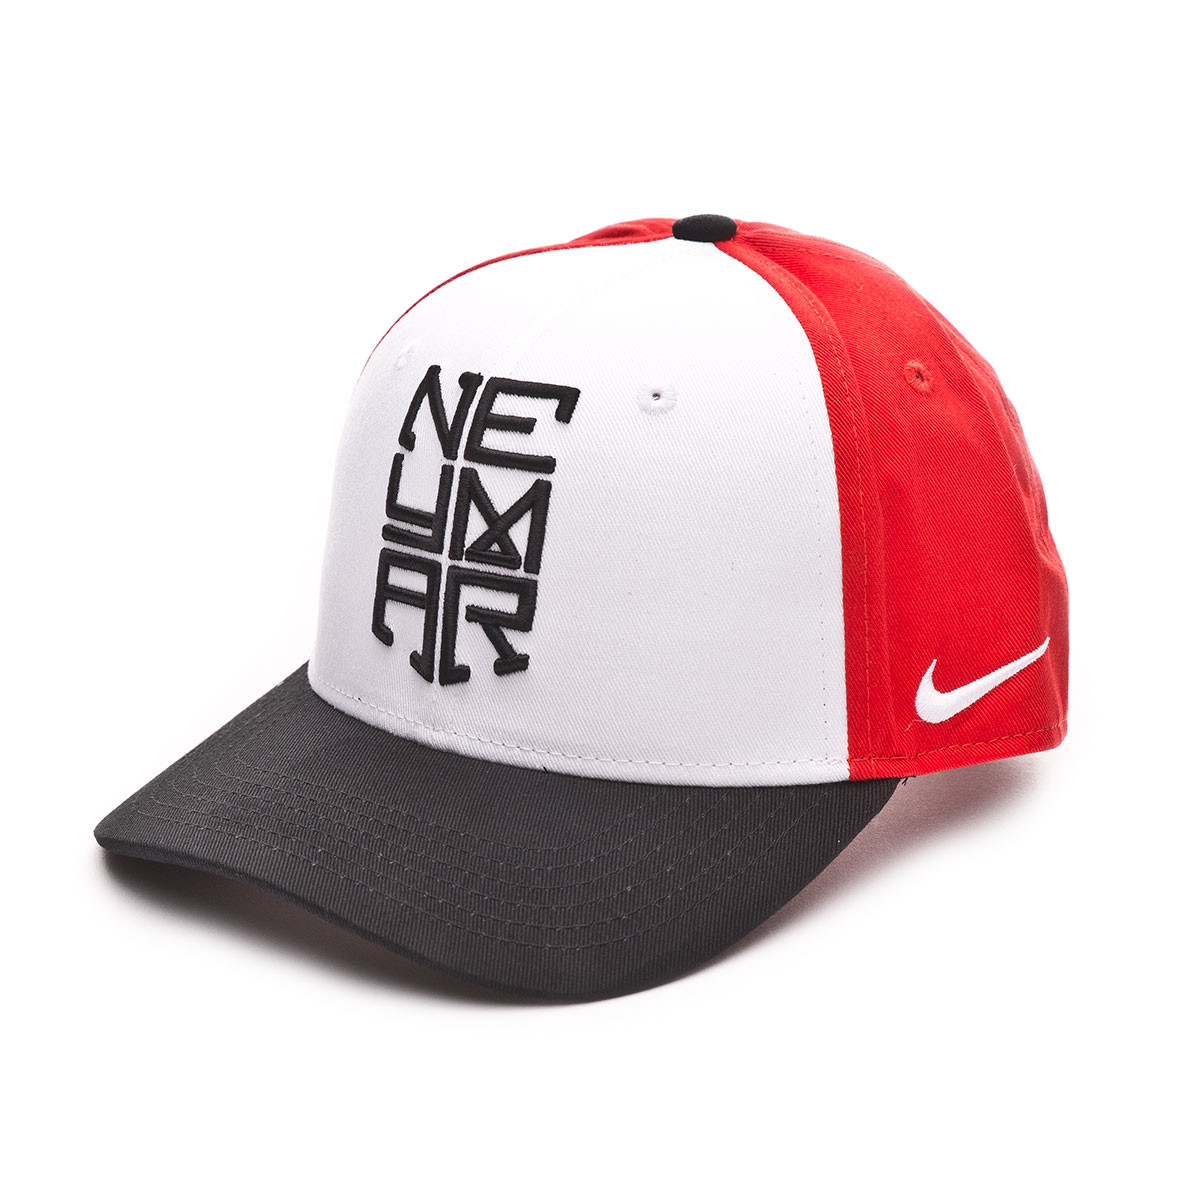 Cap Nike Neymar Jr CL99 Niño White 